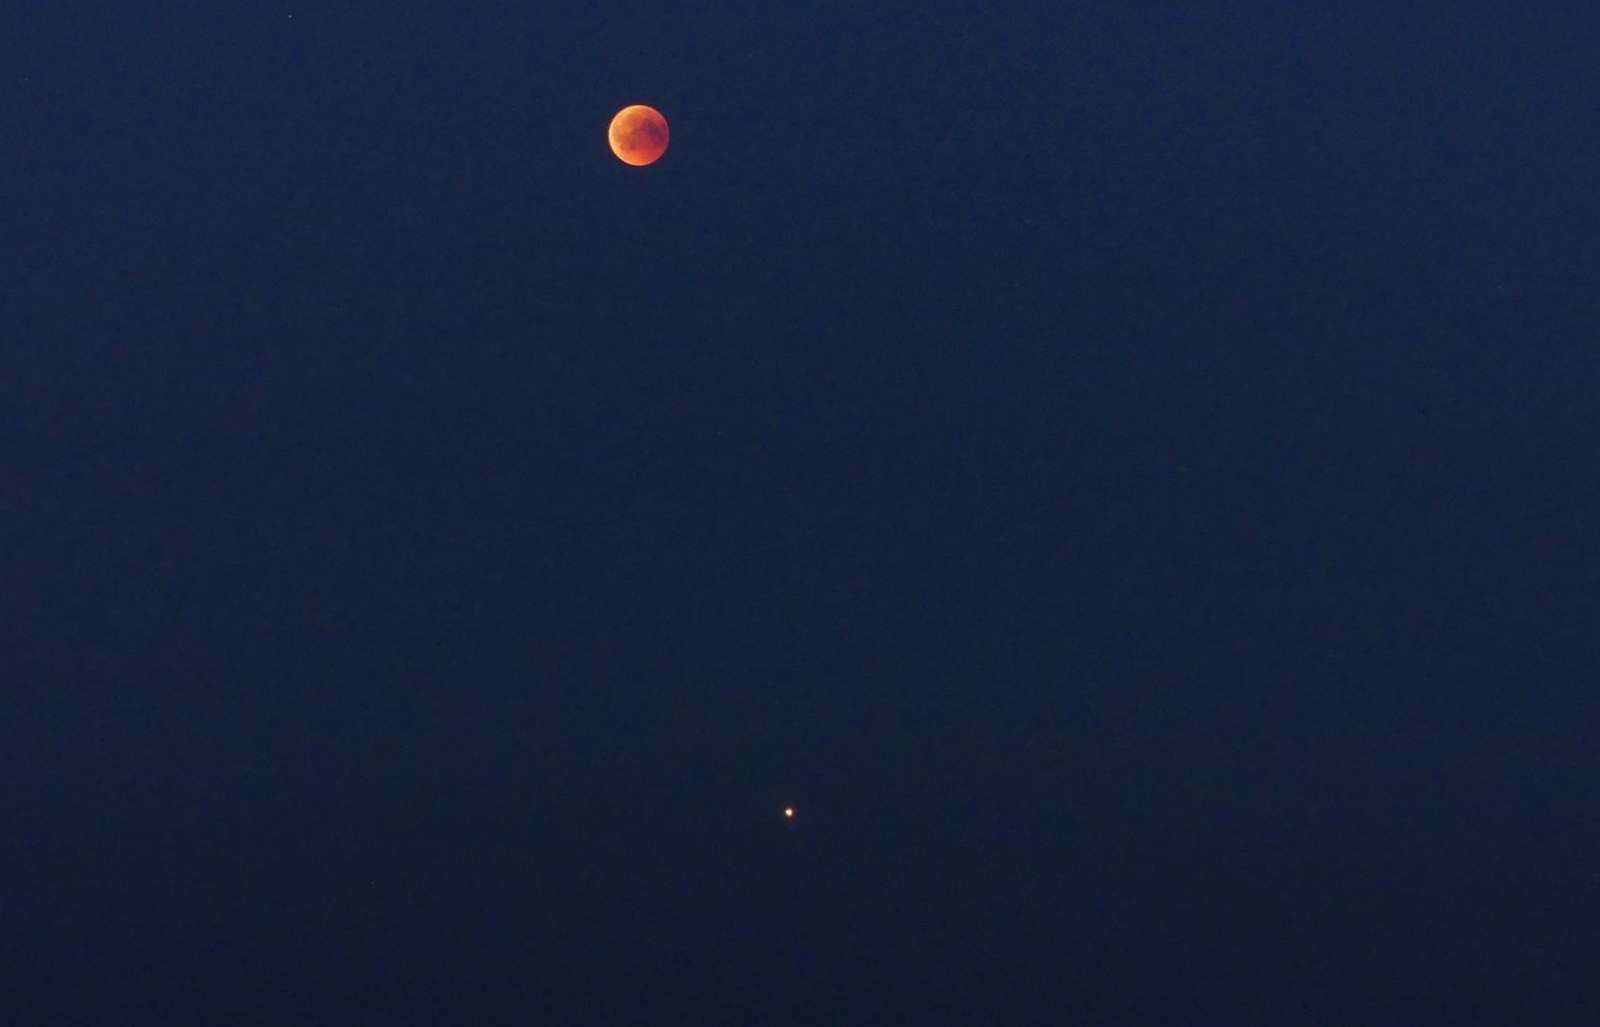 Fotografen Anders Johansson fångade blodmånen på bild från Kalmarsundsparken. I bildens nederkant syns även planeten Mars.